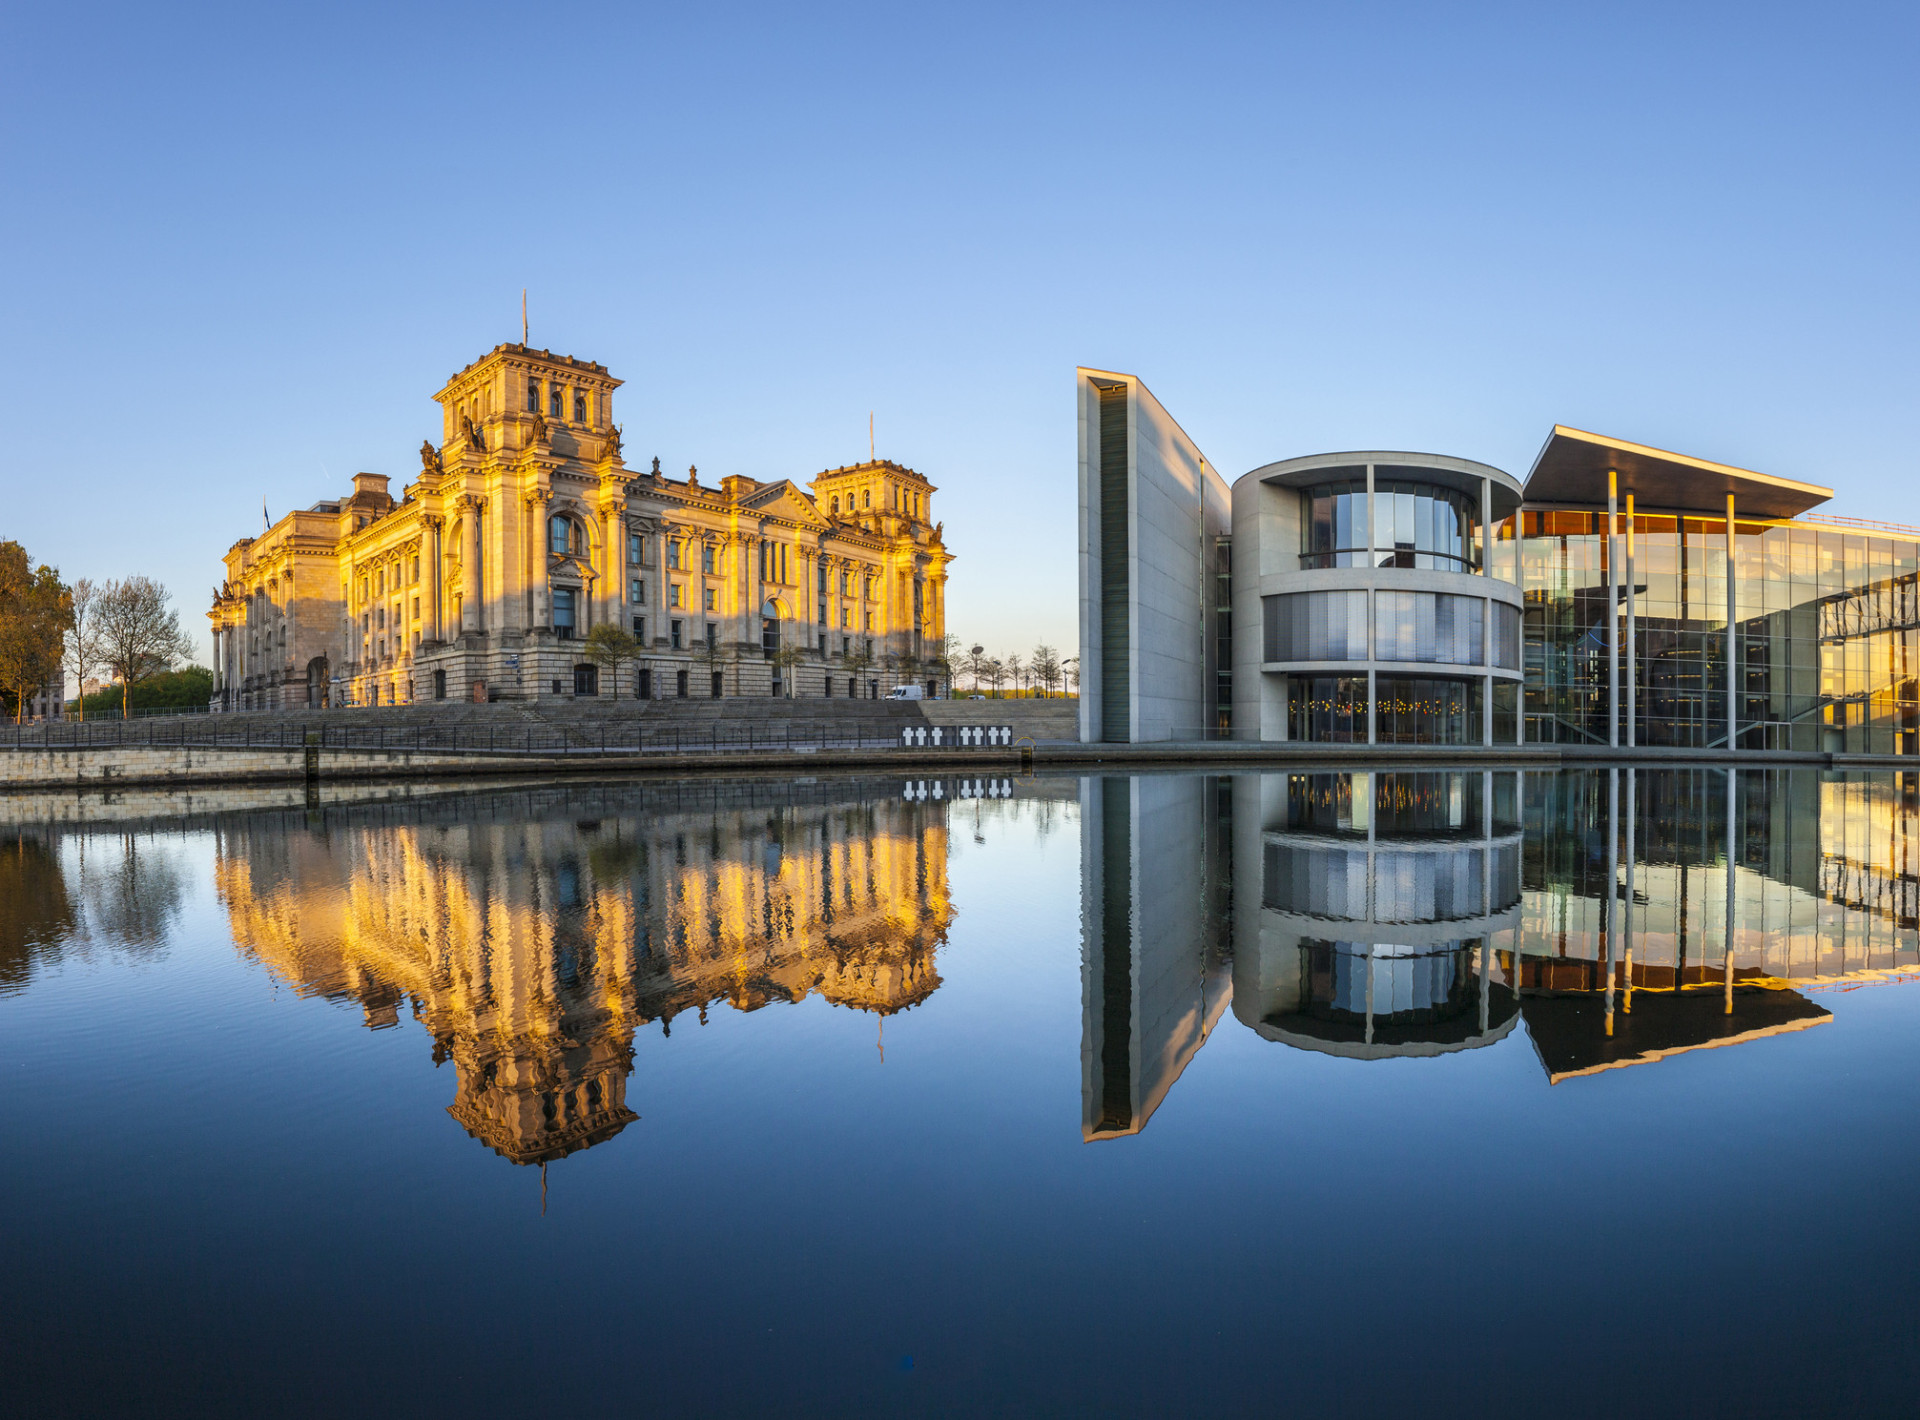 Symbole puissant de la guerre et de la réunification, le bâtiment historique du Reichstag est le siège du parlement allemand, le Bundestag.<p><a href="https://www.msn.com/fr-fr/community/channel/vid-7xx8mnucu55yw63we9va2gwr7uihbxwc68fxqp25x6tg4ftibpra?cvid=94631541bc0f4f89bfd59158d696ad7e">Suivez-nous et accédez tous les jours à du contenu exclusif</a></p>